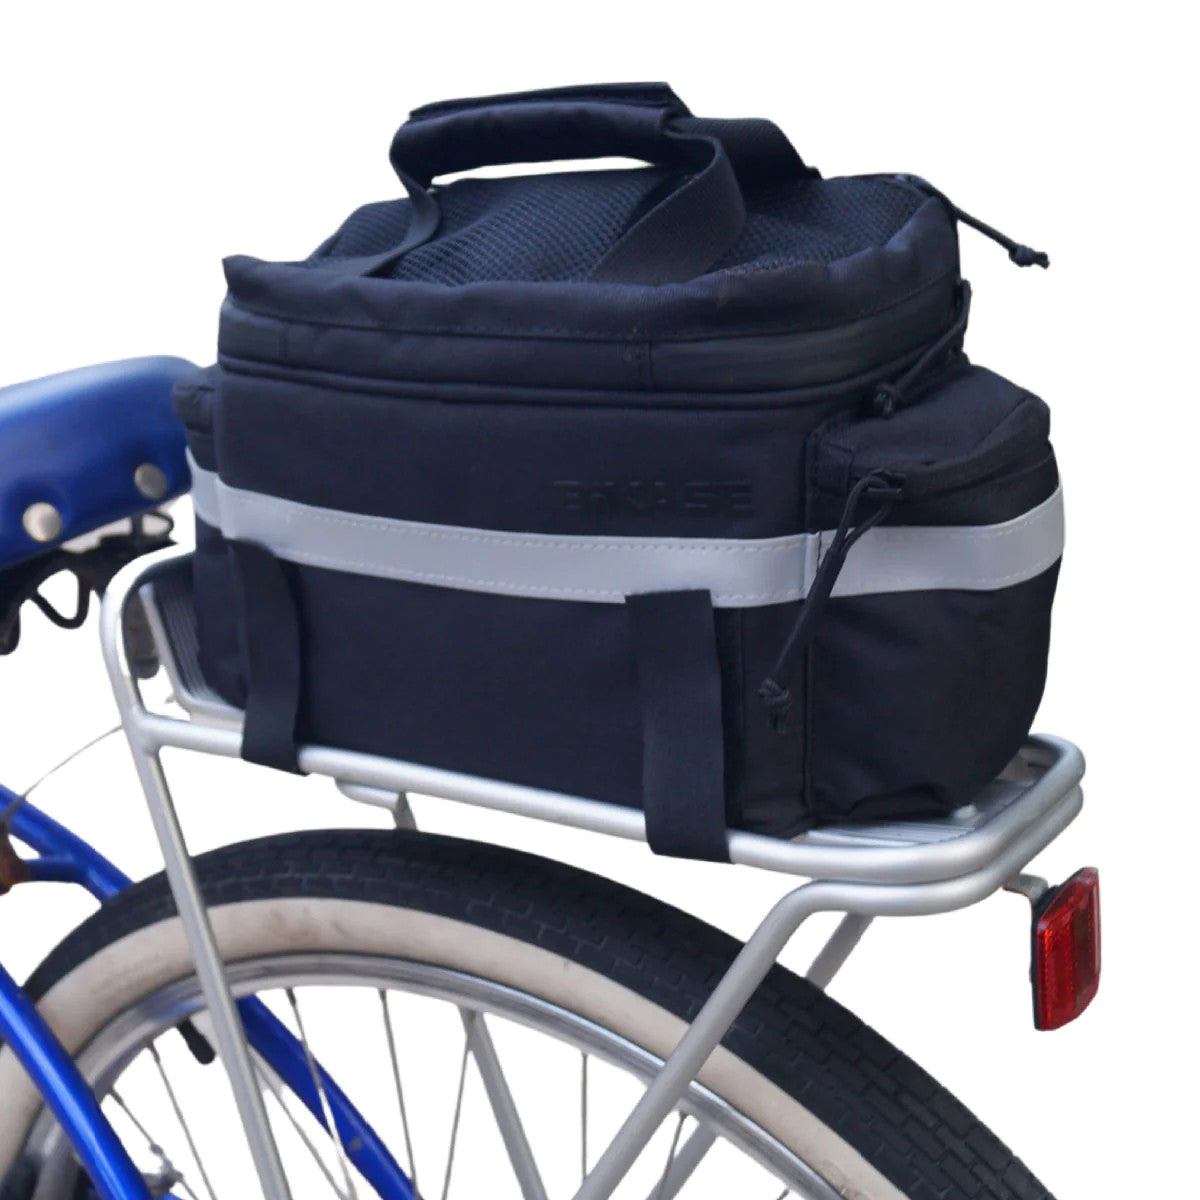 BiKase Koolpak Insulated Bike Trunk or Handlebar Bag